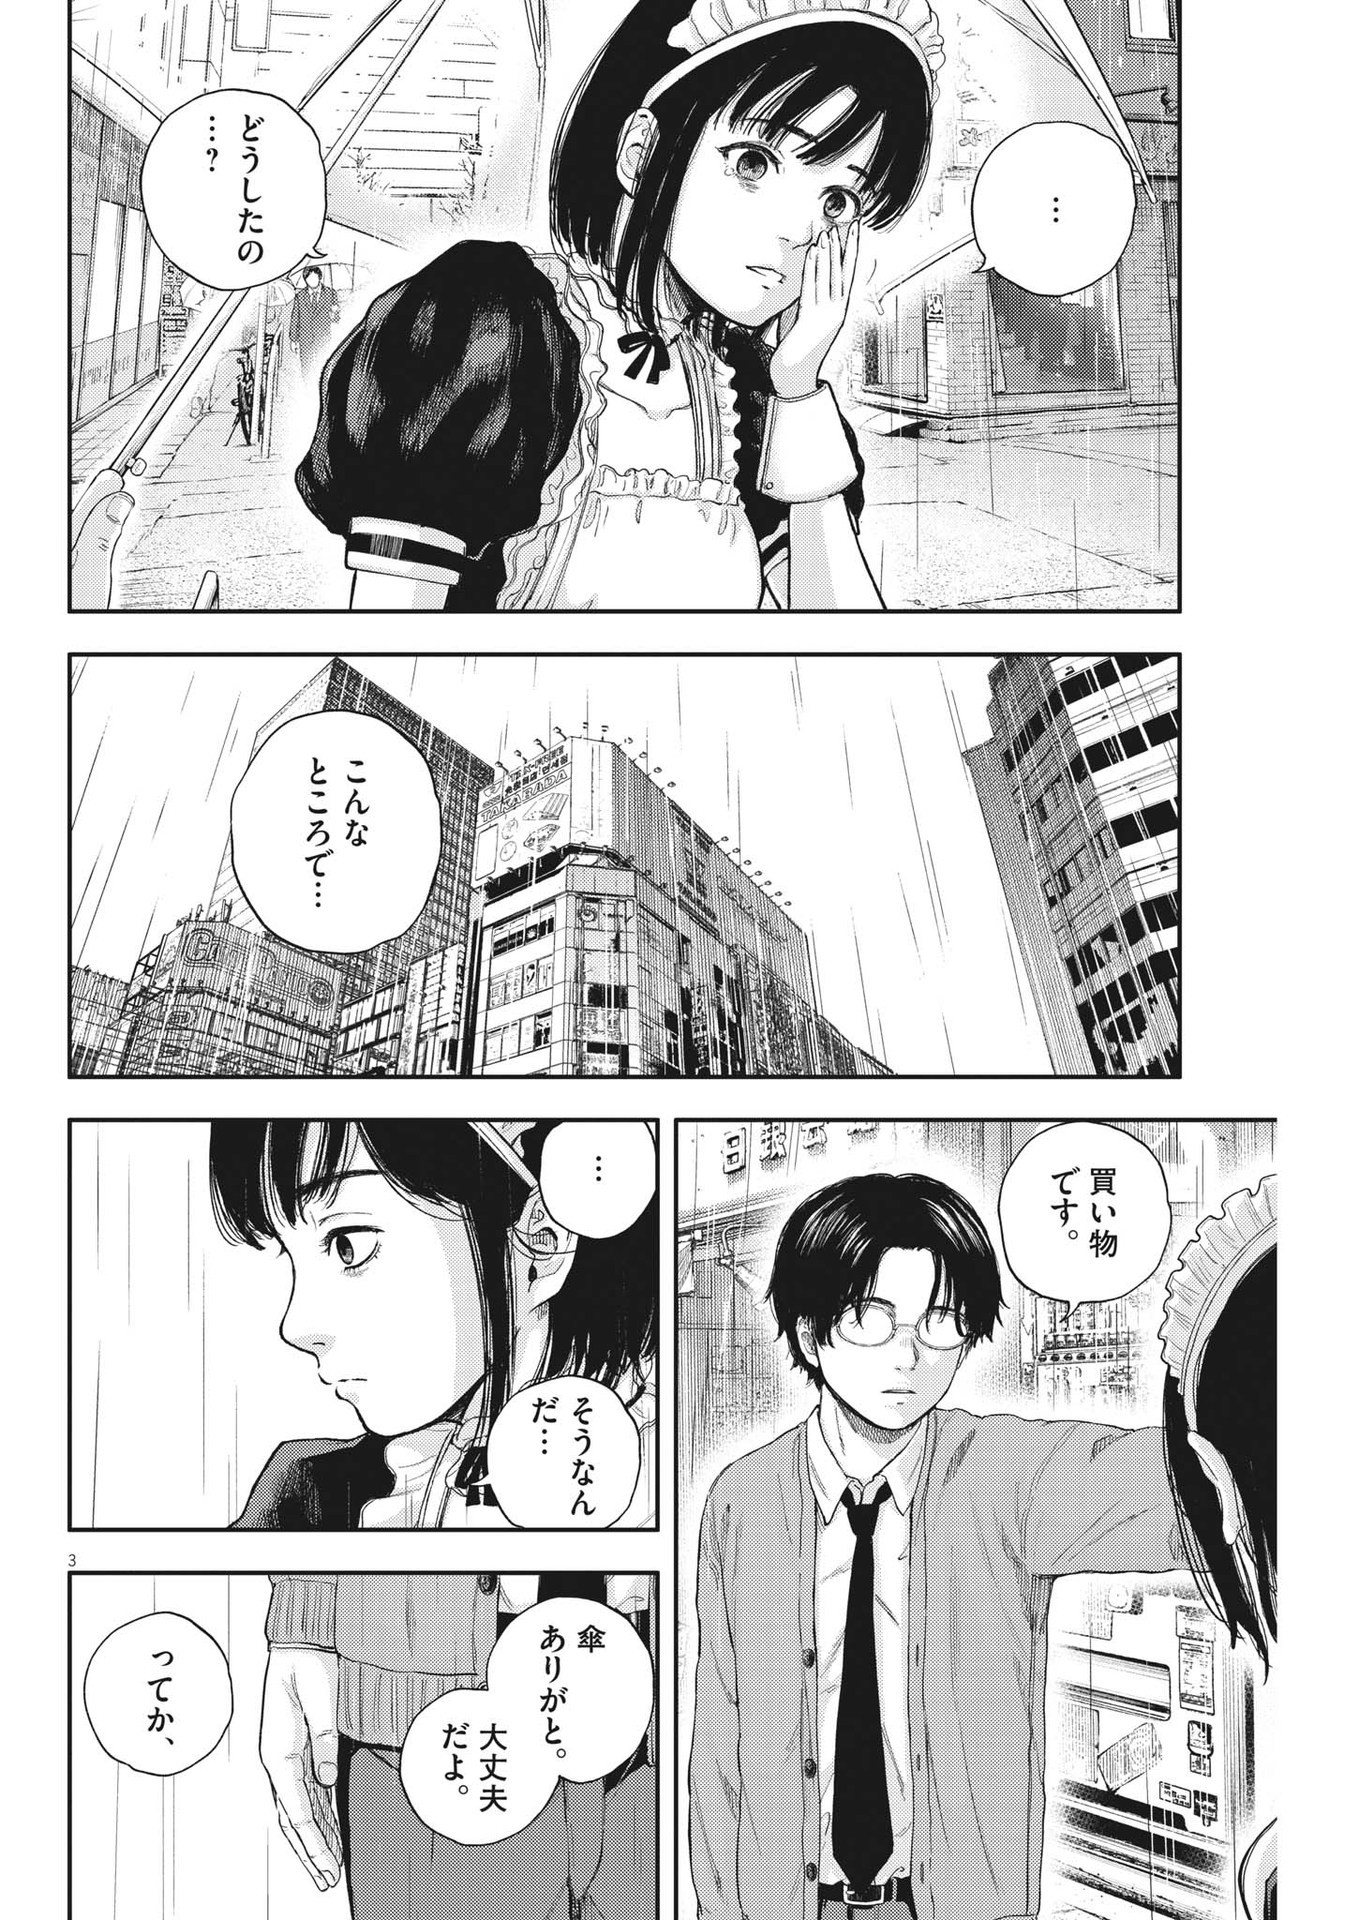 Yumenashi-sensei no Shinroshidou - Chapter 2 - Page 3